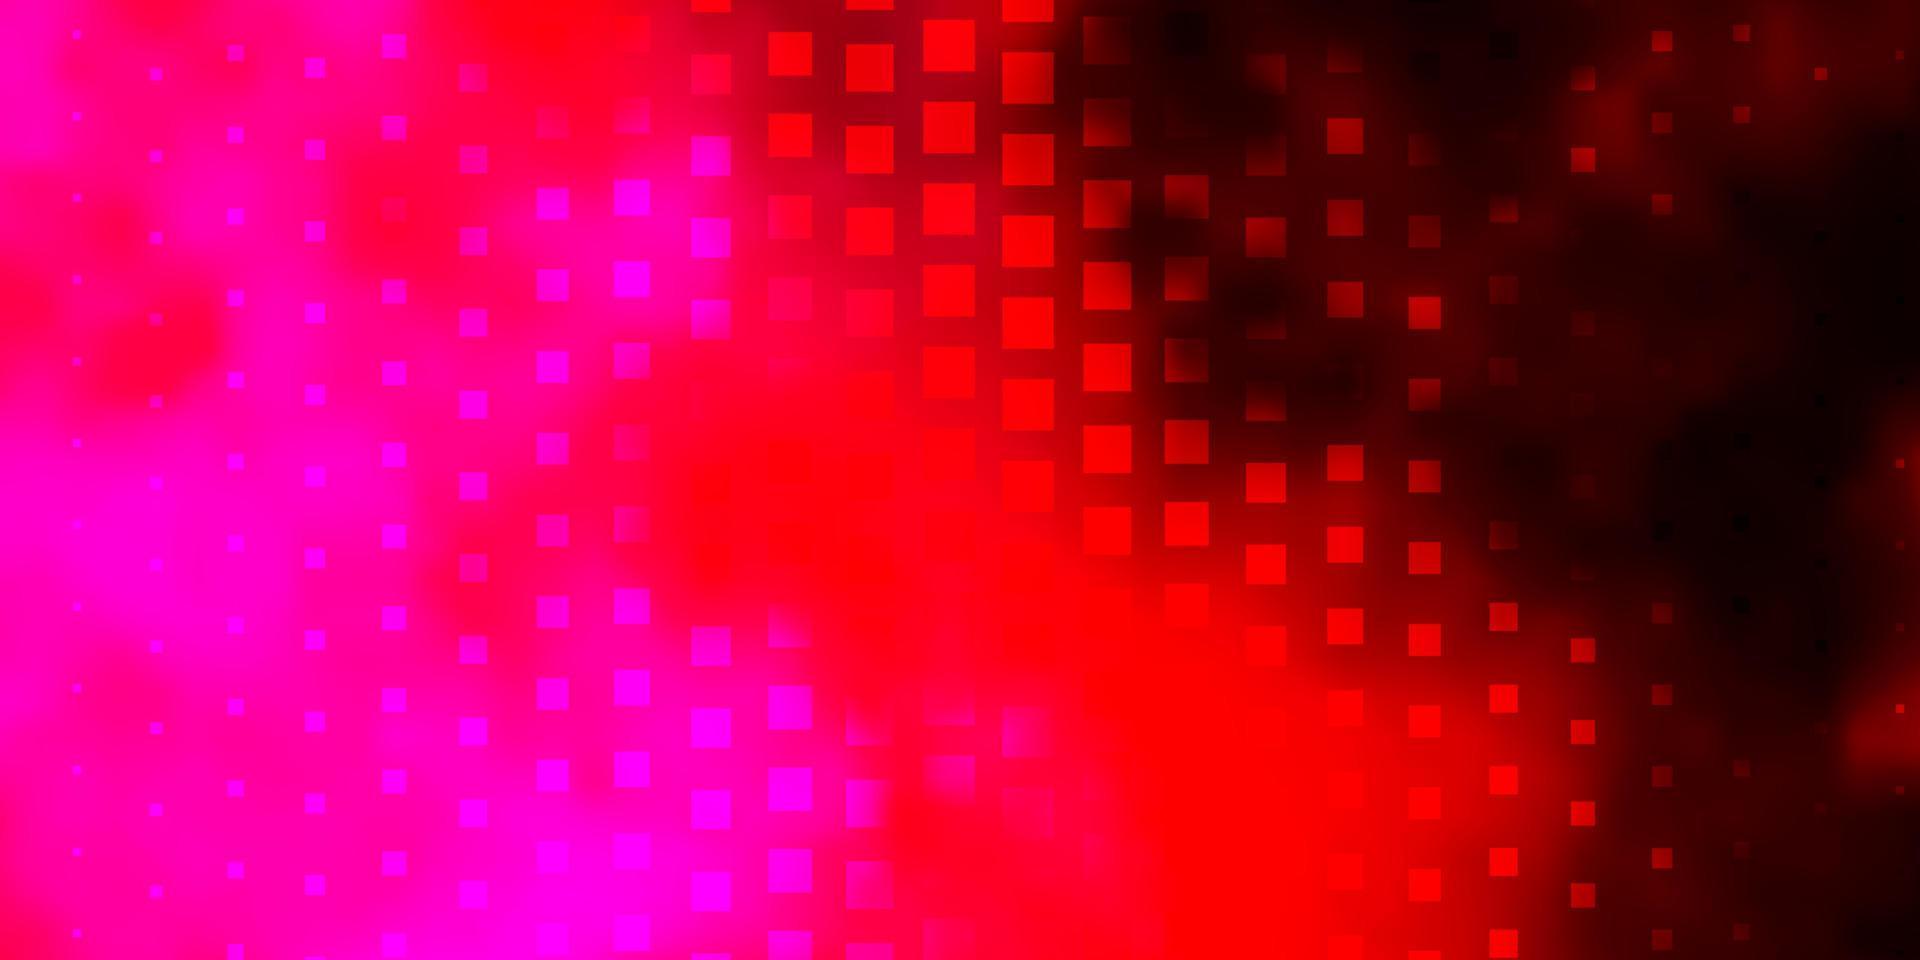 mörk lila, rosa vektor bakgrund med rektanglar.